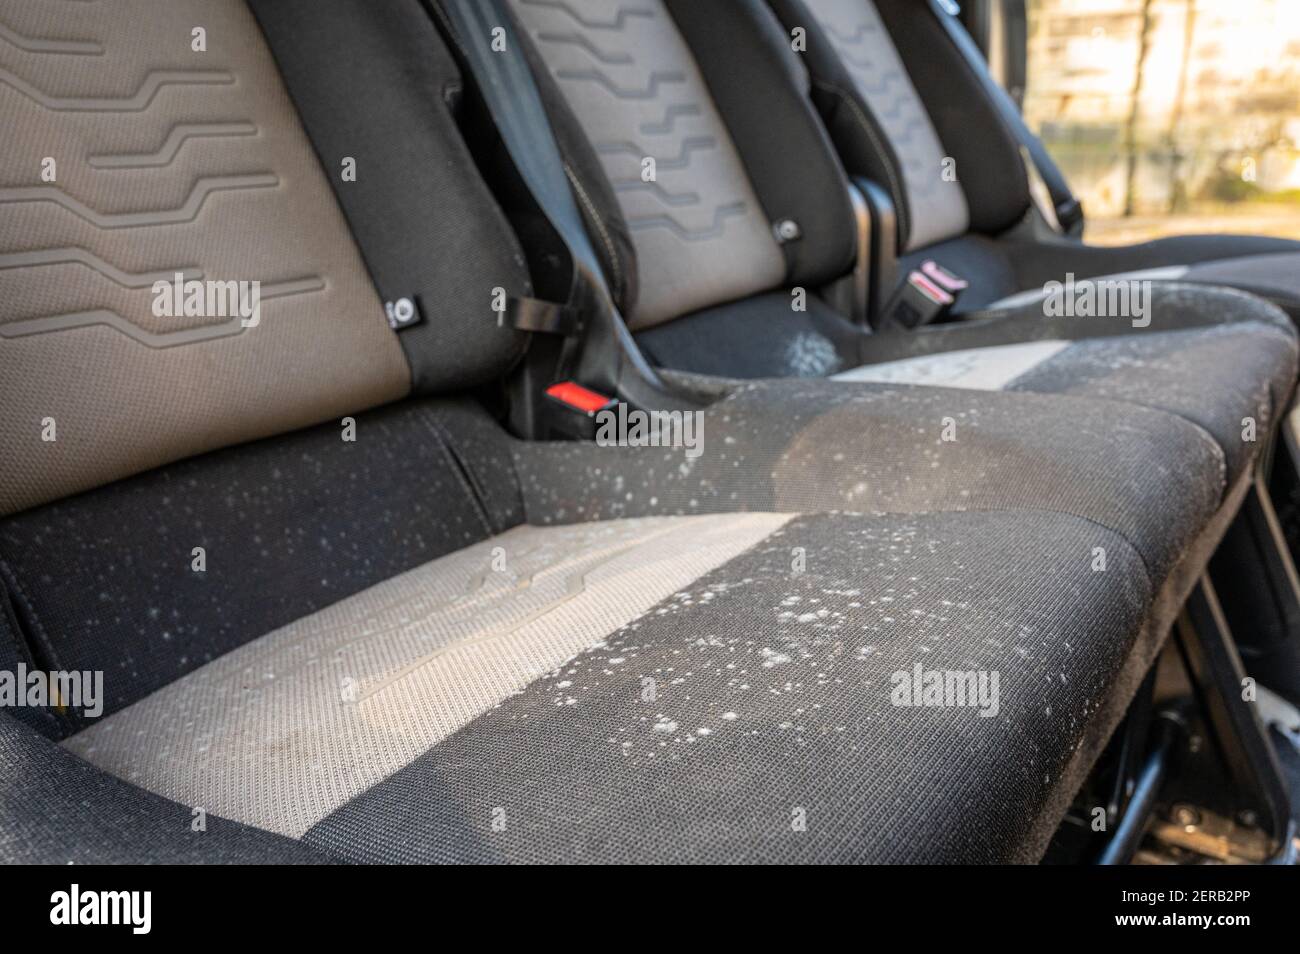 Schimmel und Pilz auf einer Reihe von Autositzen, dass Sind seit mehreren  Monaten ungenutzt geblieben Stockfotografie - Alamy